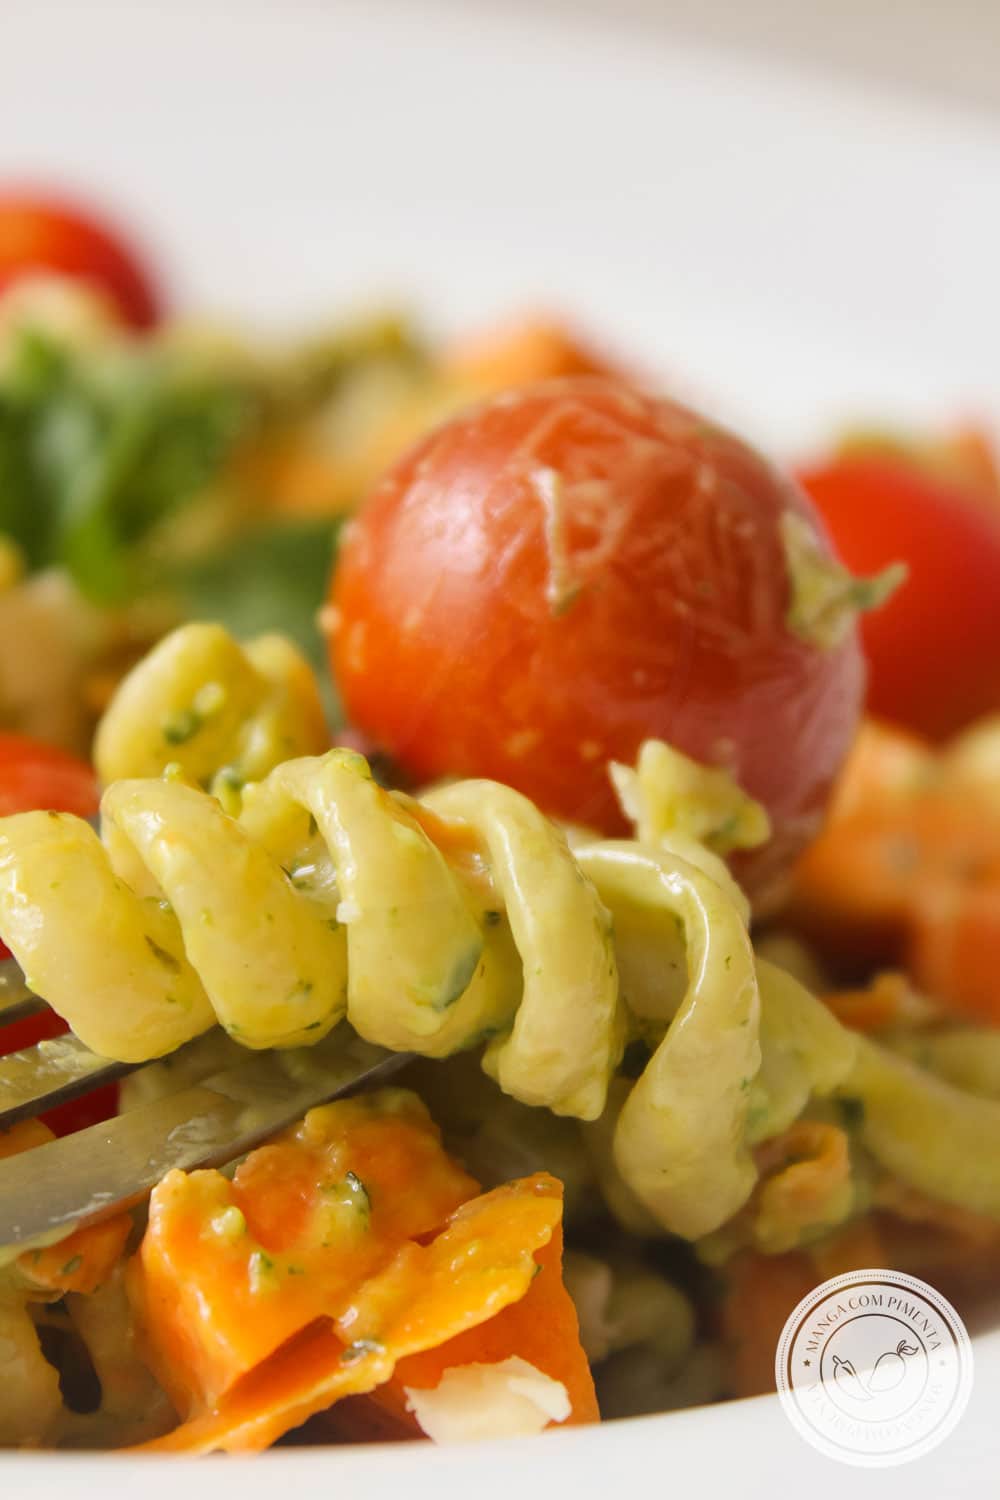 Receita de Salada de Macarrão com Maionese de Manjericão - um prato delicioso para os dias quentes de verão!